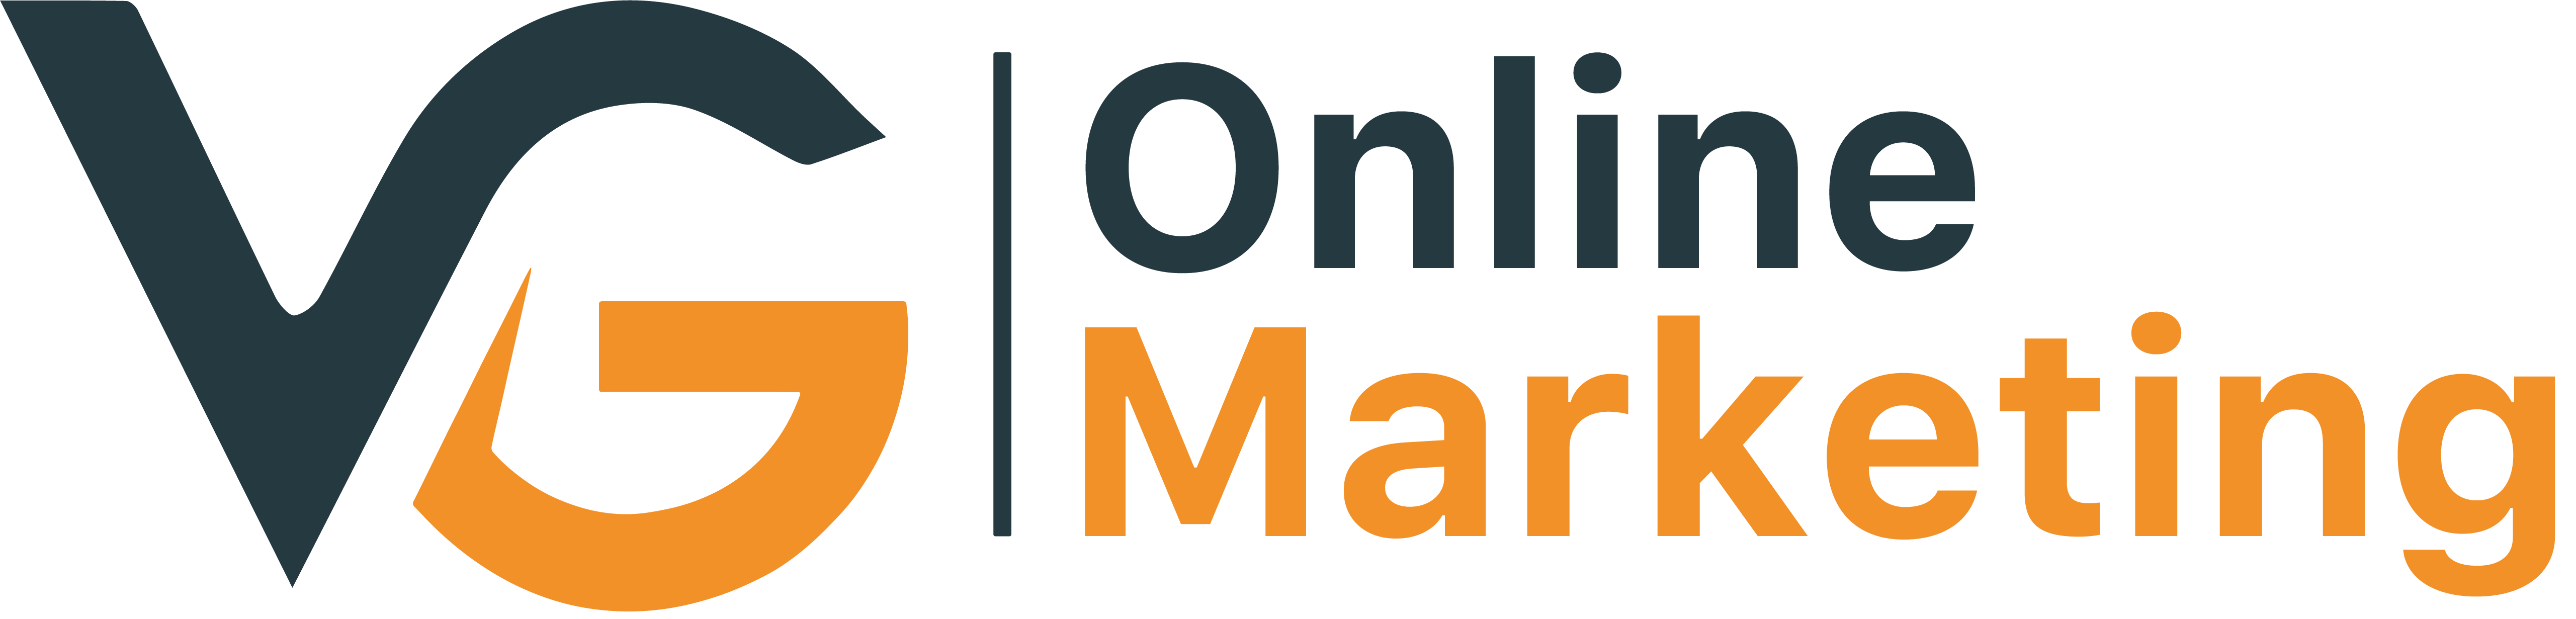 Logo V&G Online Marketing